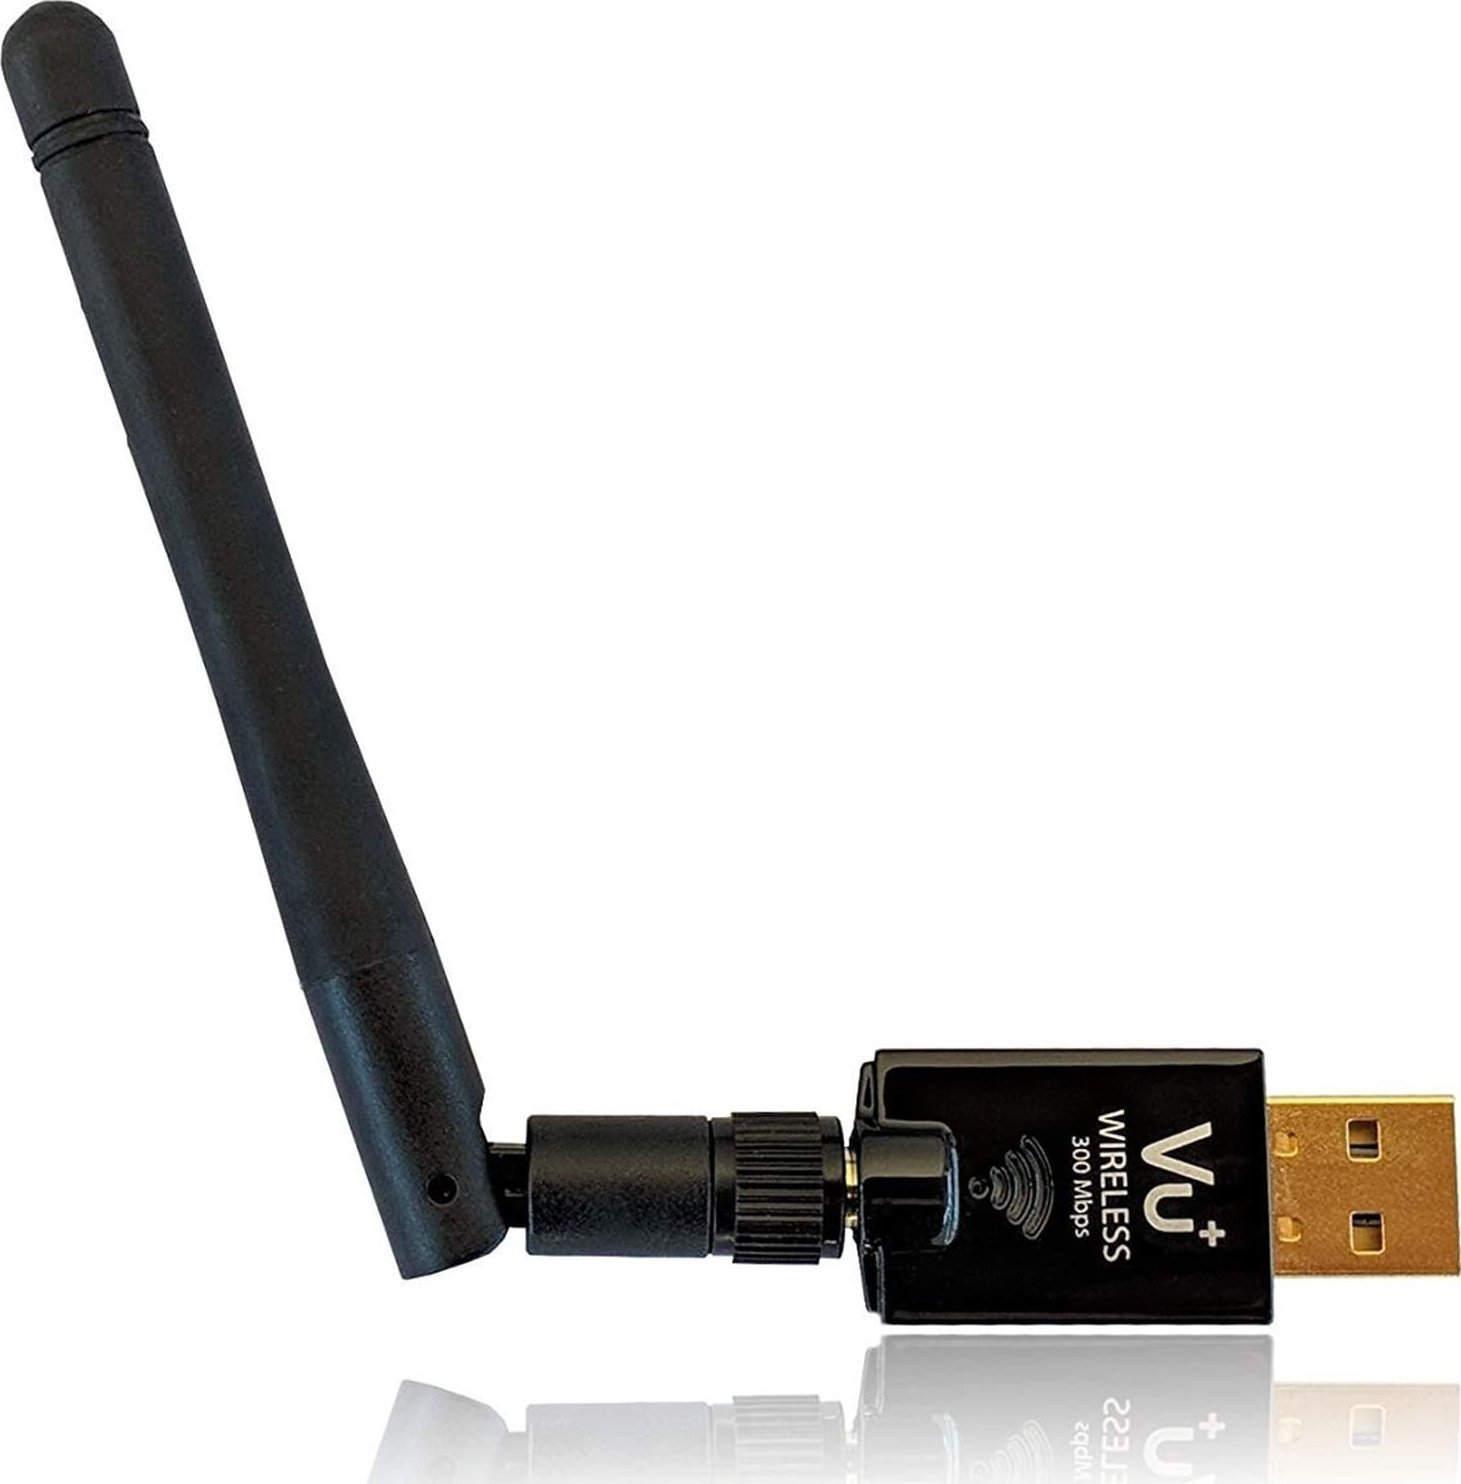 Adaptu latorul USB VU + mai mult de 300 Mbps adaptor Wireless USB, adaptor LAN Wireless Adaptorul USB VU + 300 Mbps este un adaptor Wireless USB, care funcționează ca un adaptor LAN Wireless.